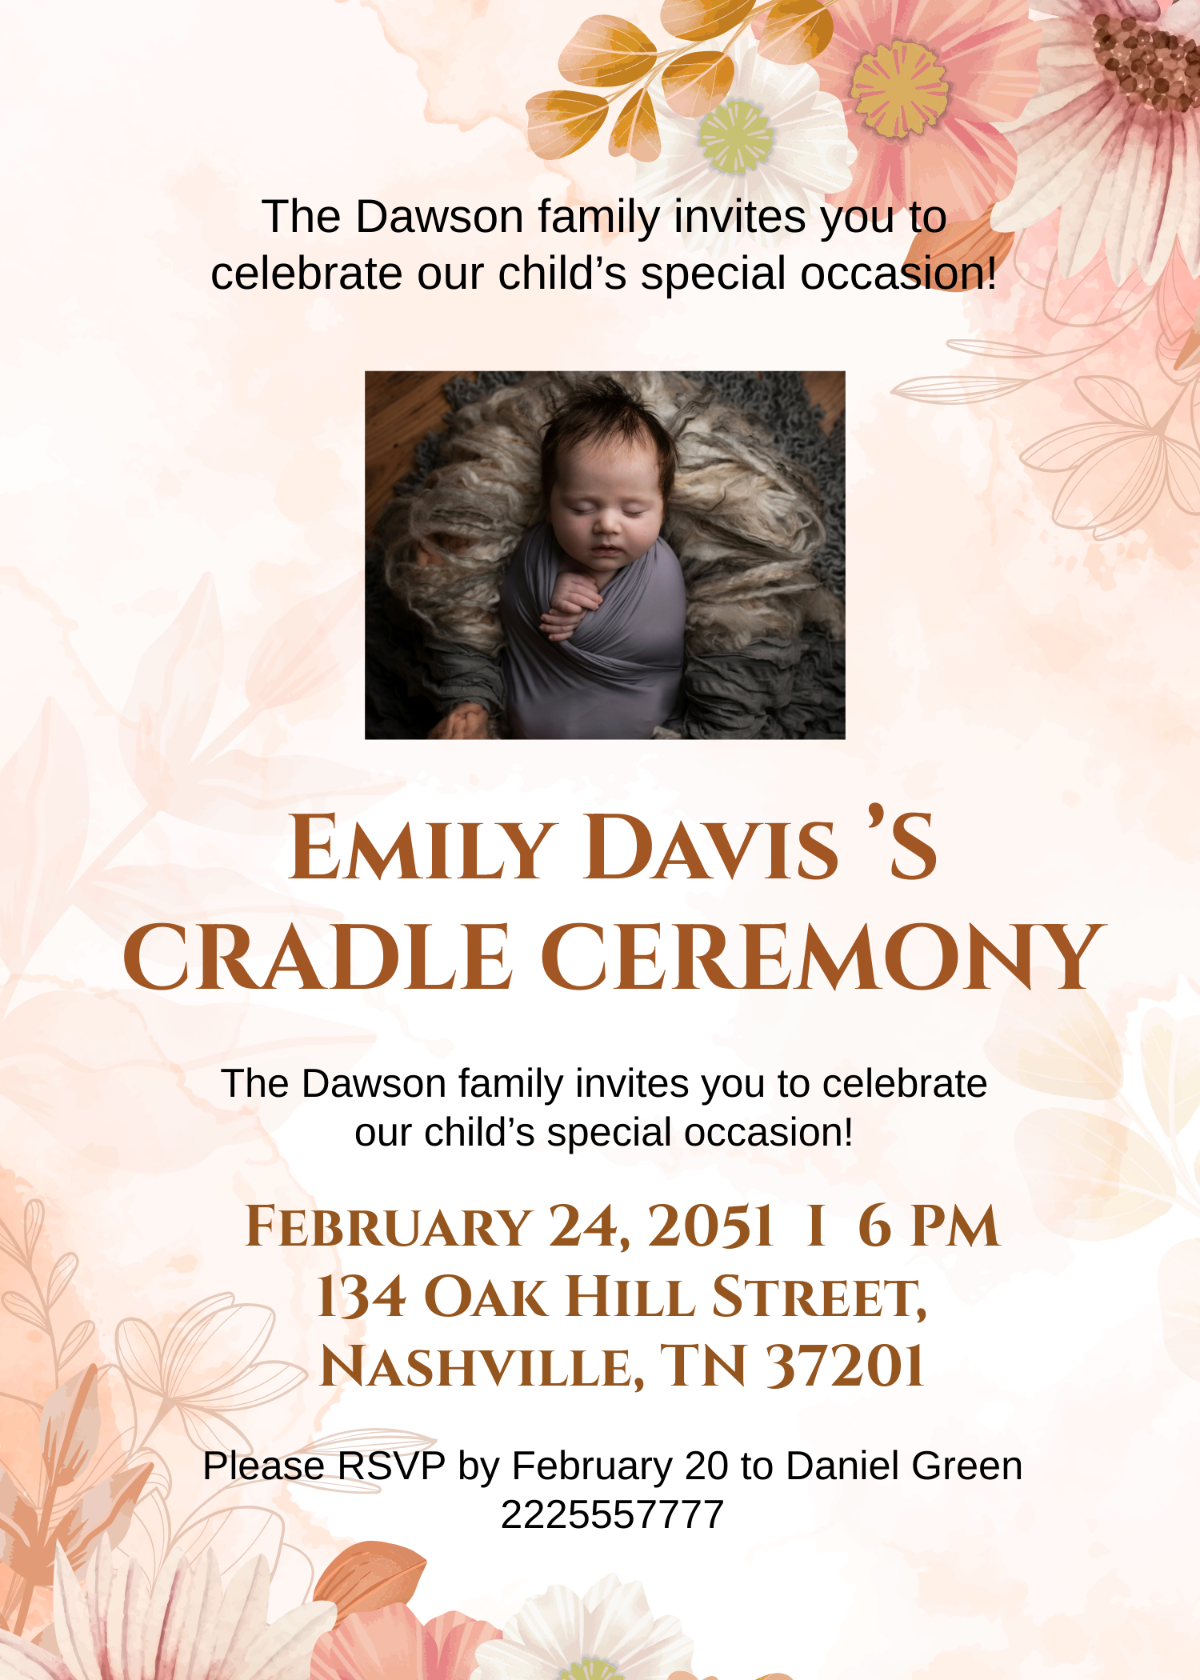 Cradle ceremony invitation